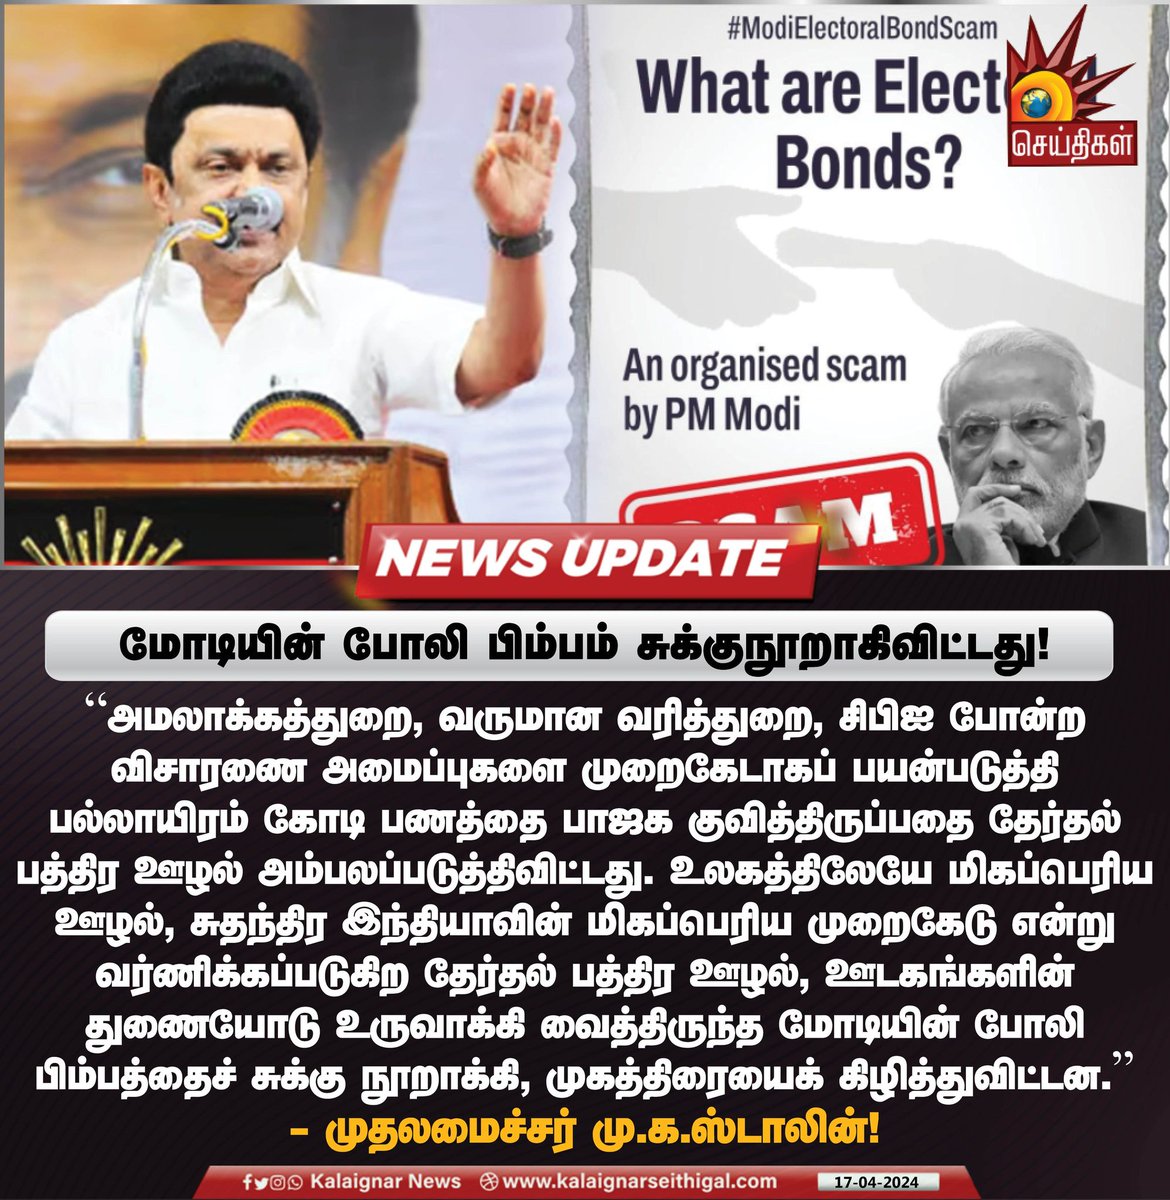 மோடியின் போலி பிம்பம் சுக்குநூறாகிவிட்டது !

#BJPFailedIndia #CMMKStalin #MKStalinGovt #TamilNadu #INDIAAlliance #ElectrolBondScam  #KalaignarSeithigal